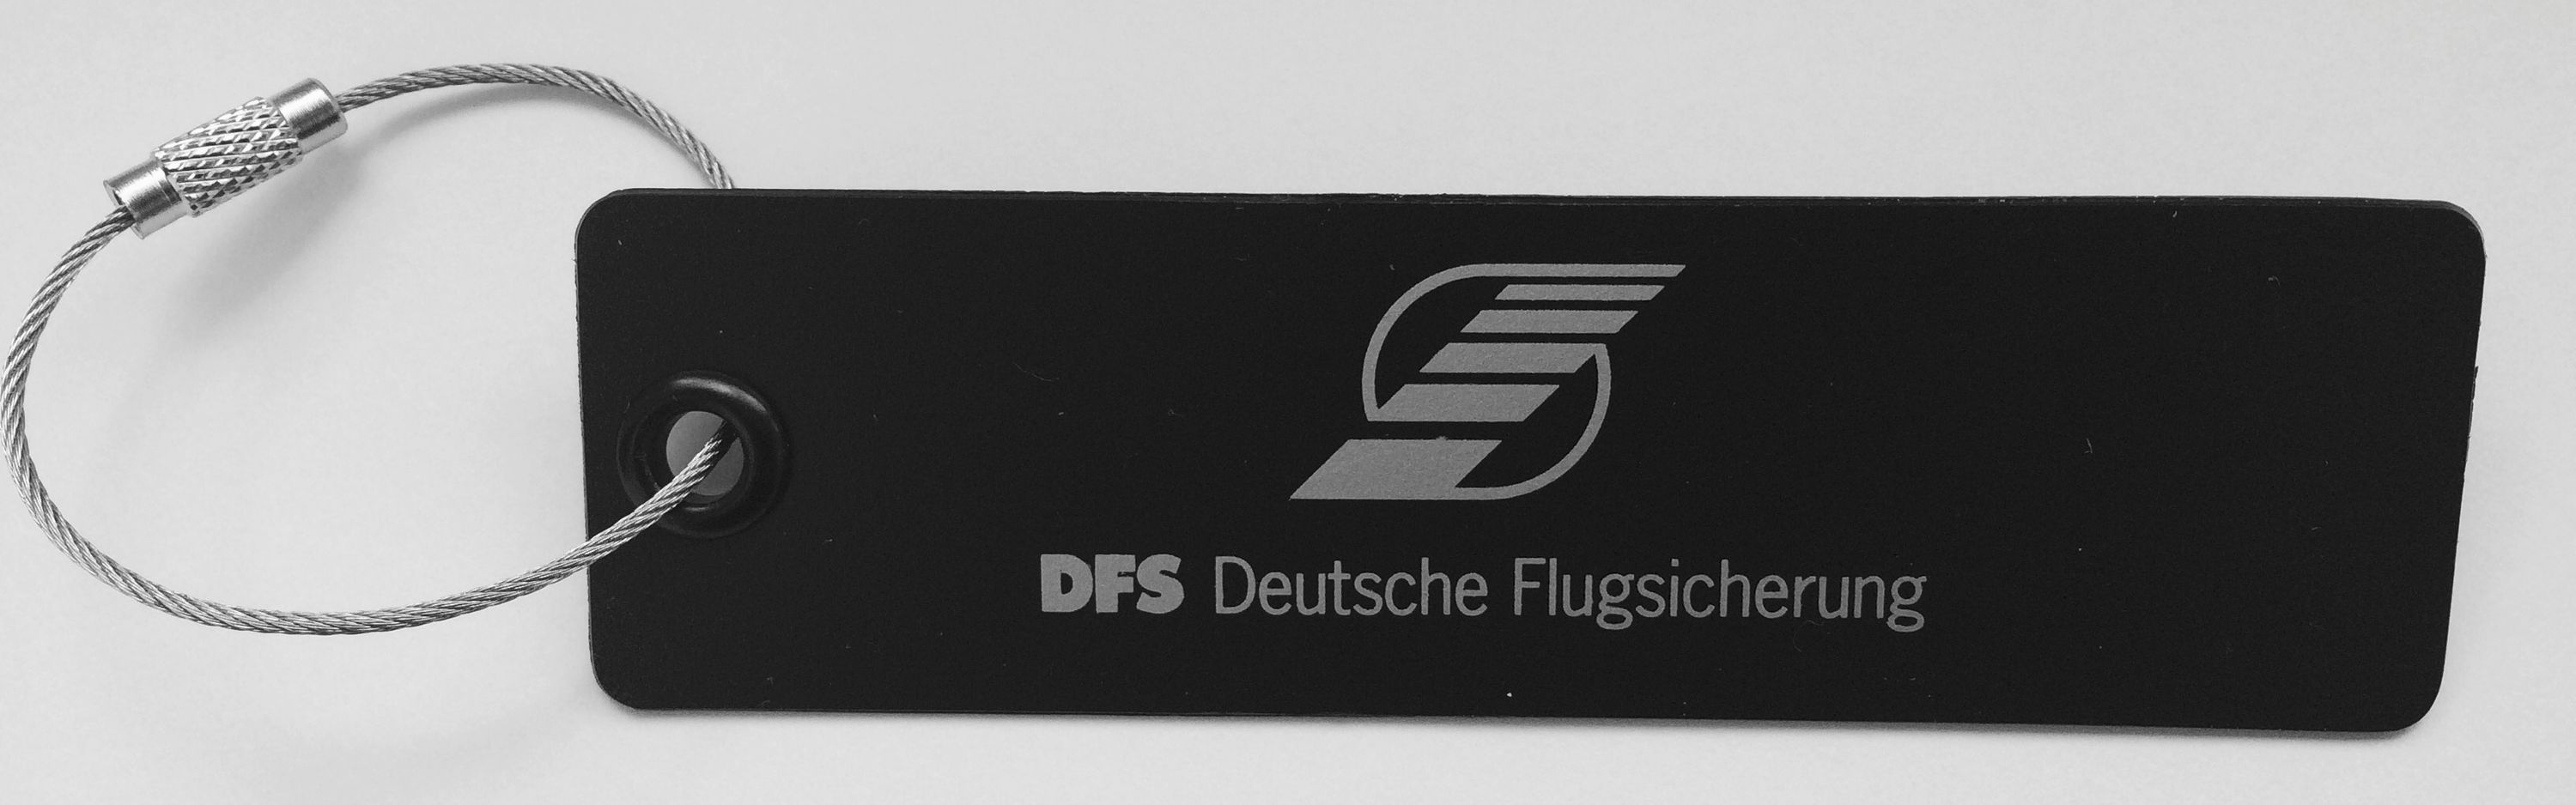 Kofferanhänger mit DFS-Logo